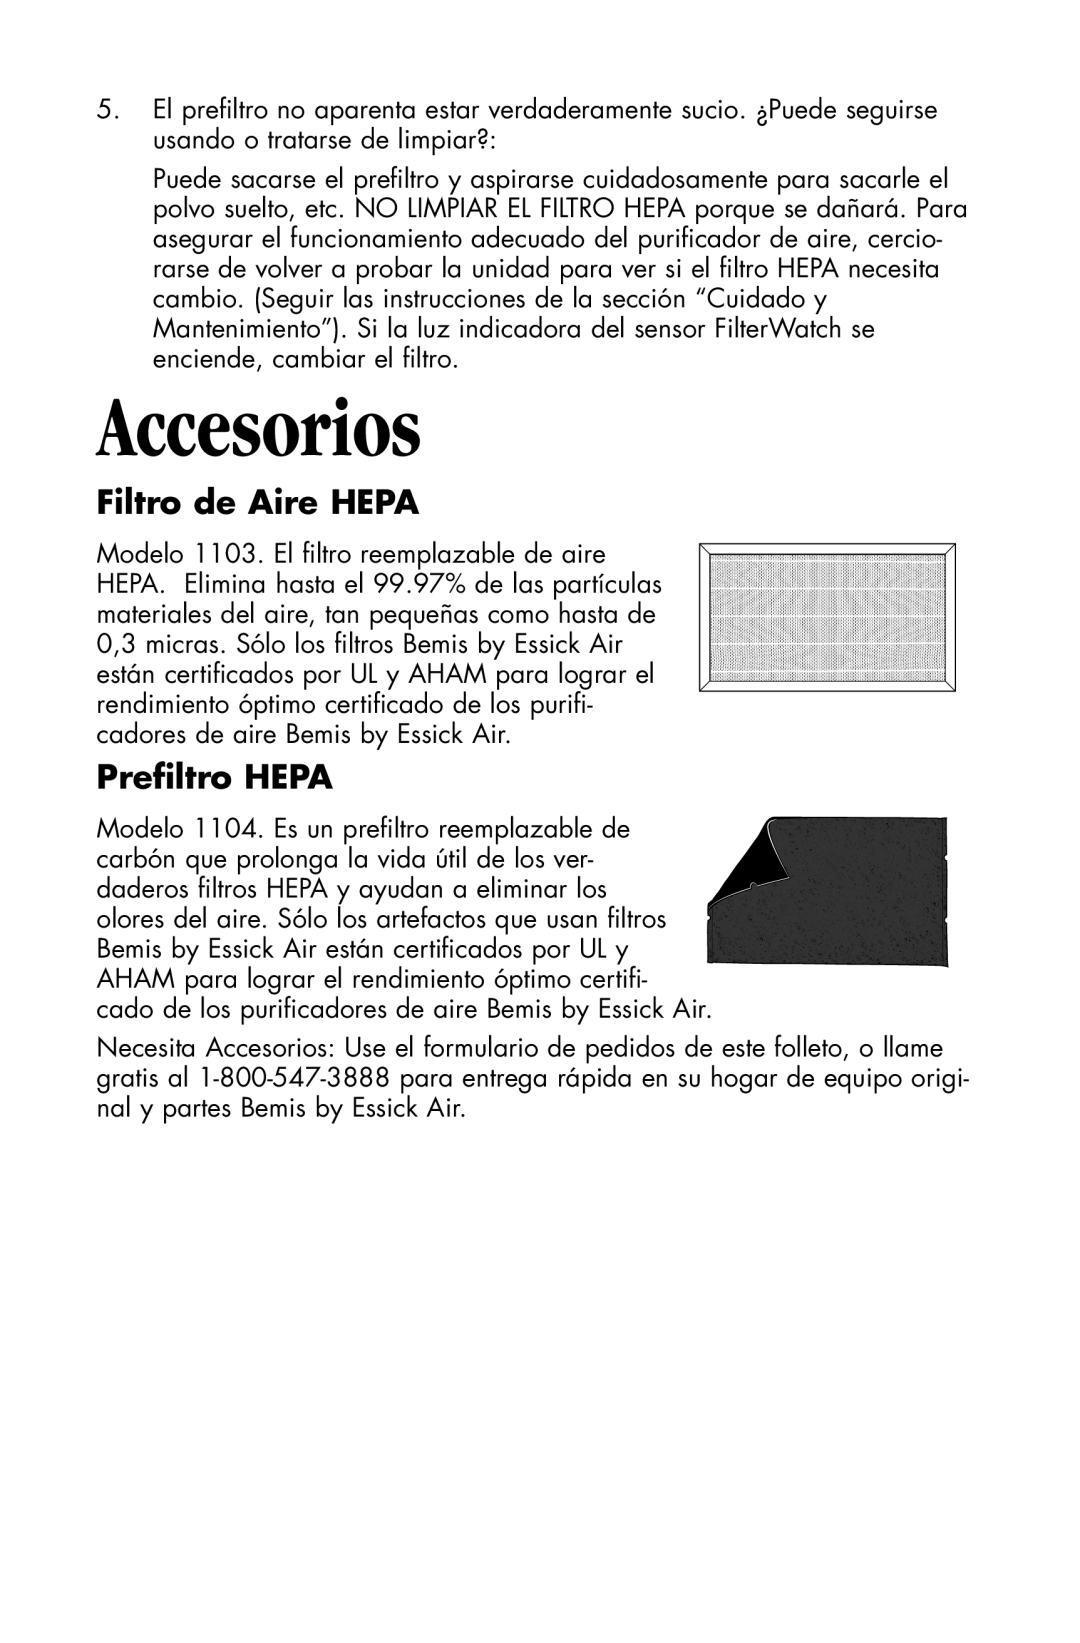 Essick Air 127-001 manual Accesorios, Filtro de Aire HEPA, Preﬁltro HEPA 